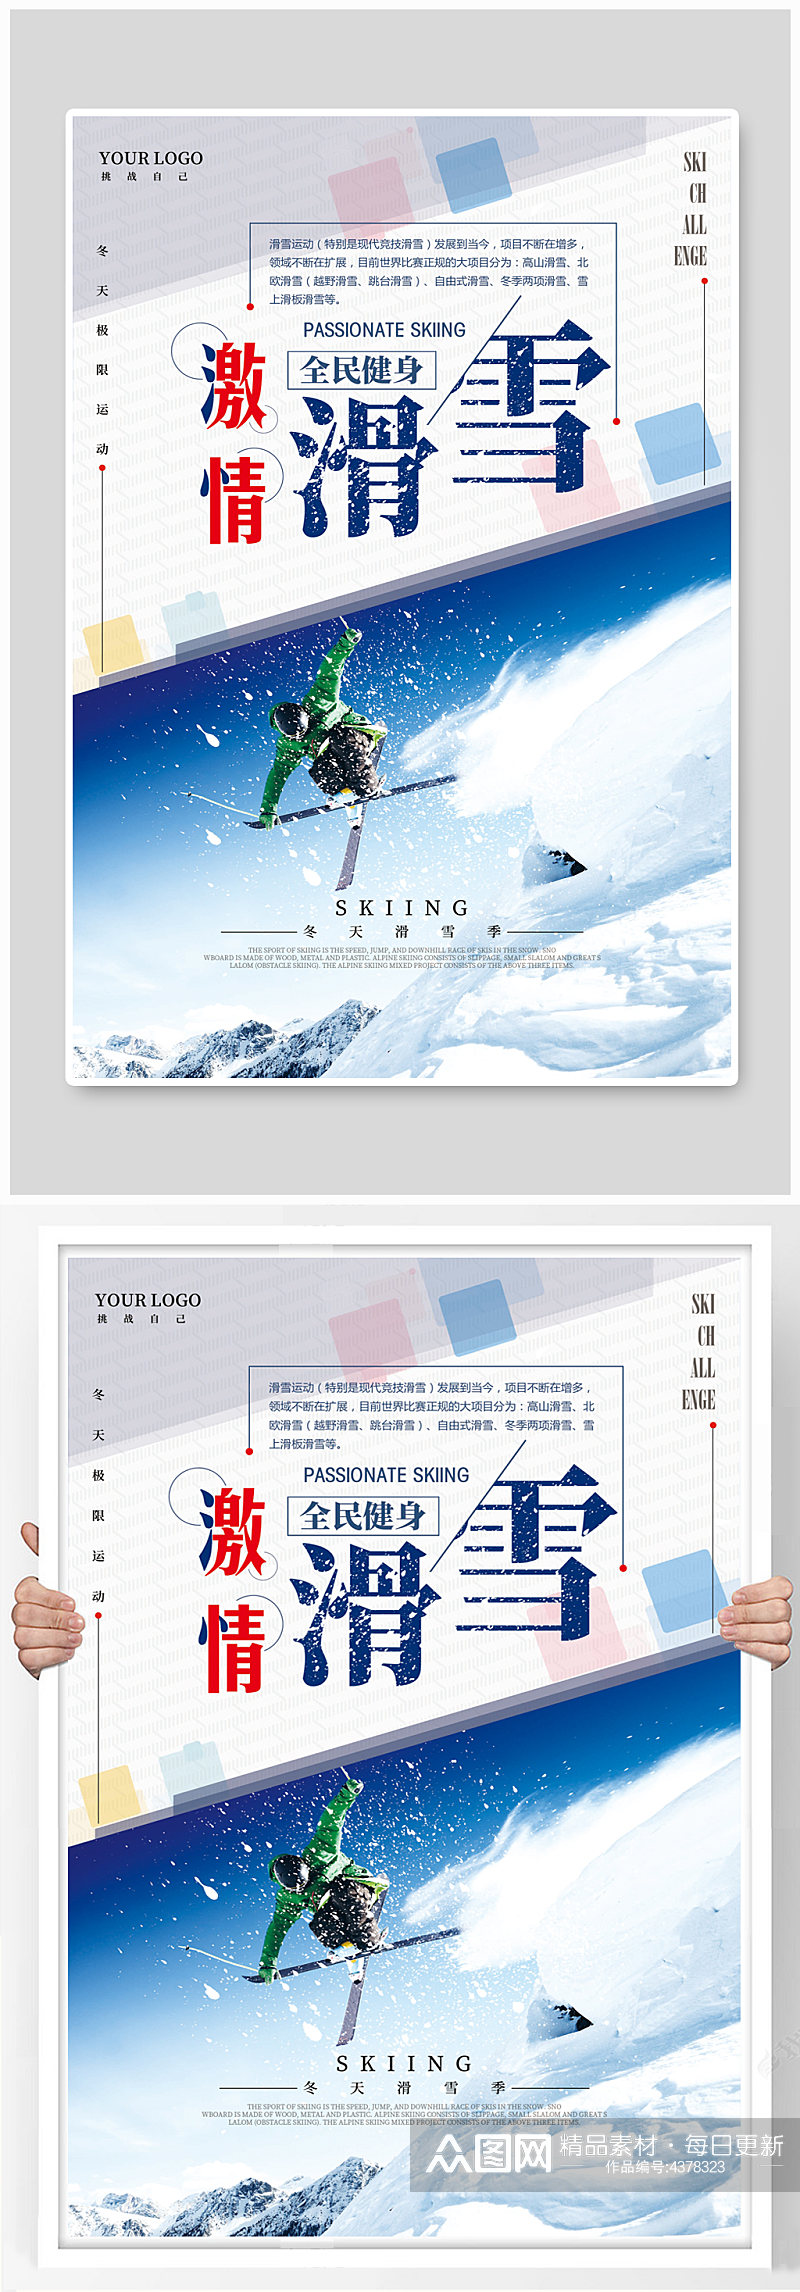 激情滑雪海报滑雪运动素材